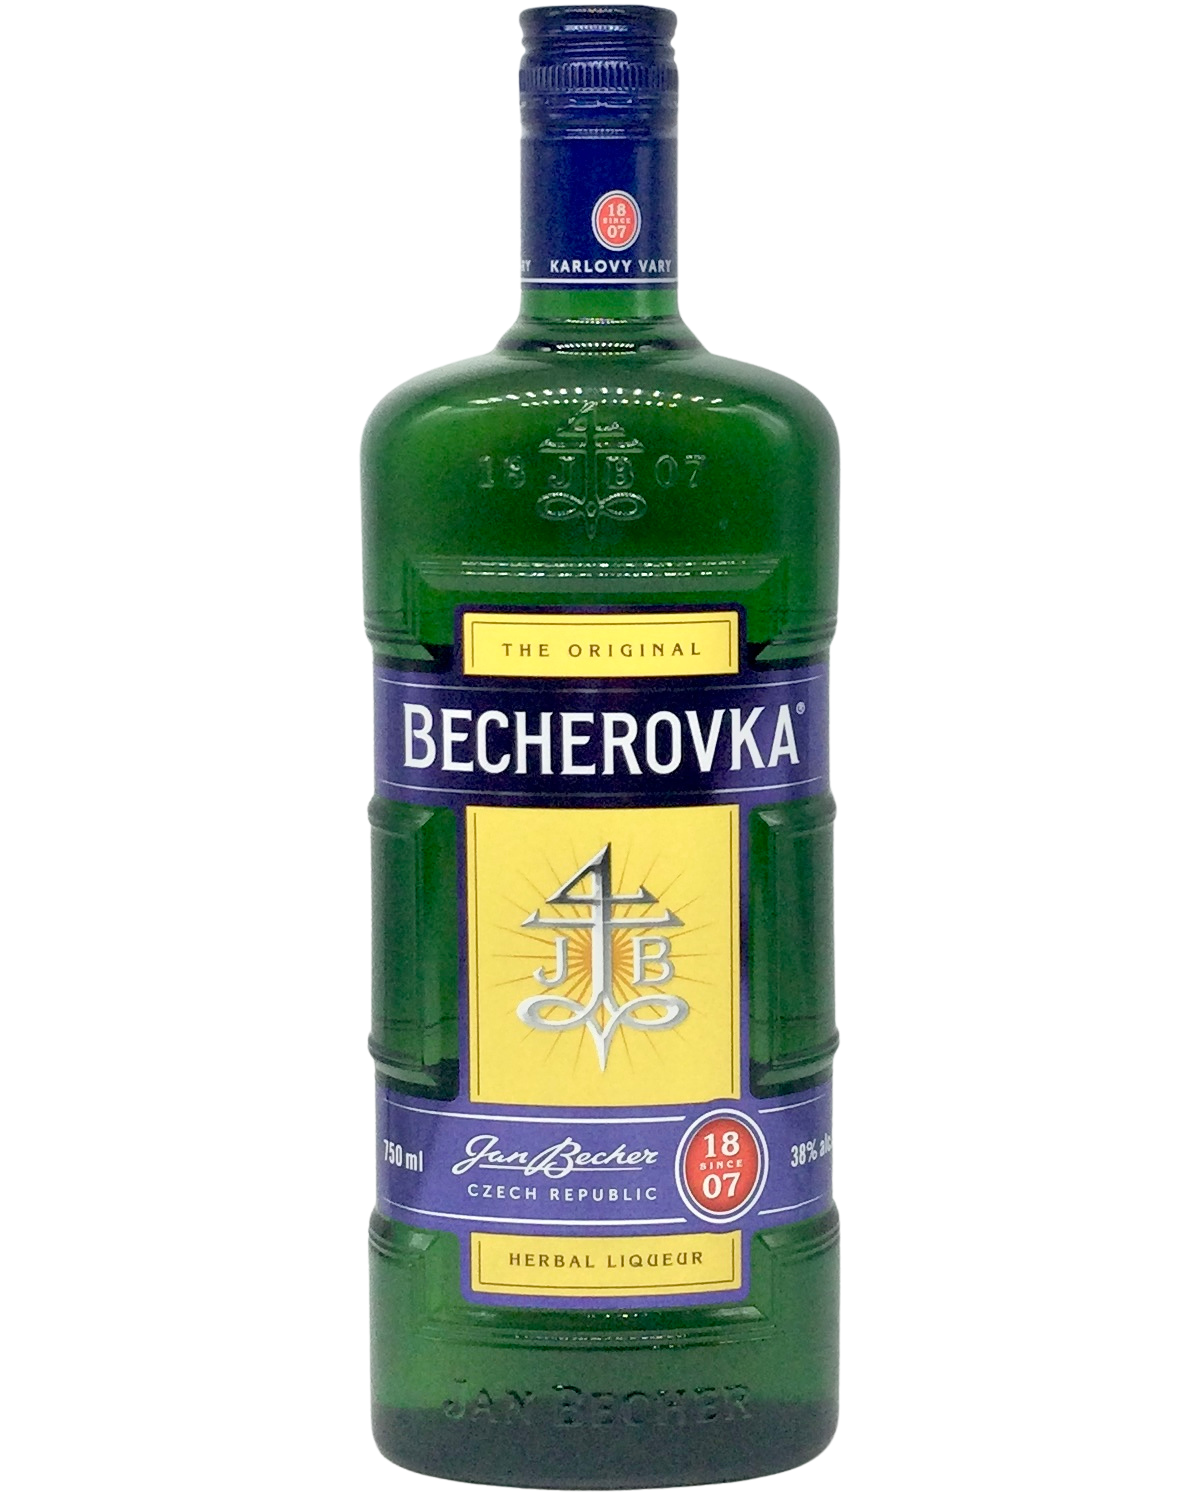 Becherovka Herbal Liqueur, Czech Republic newarrival